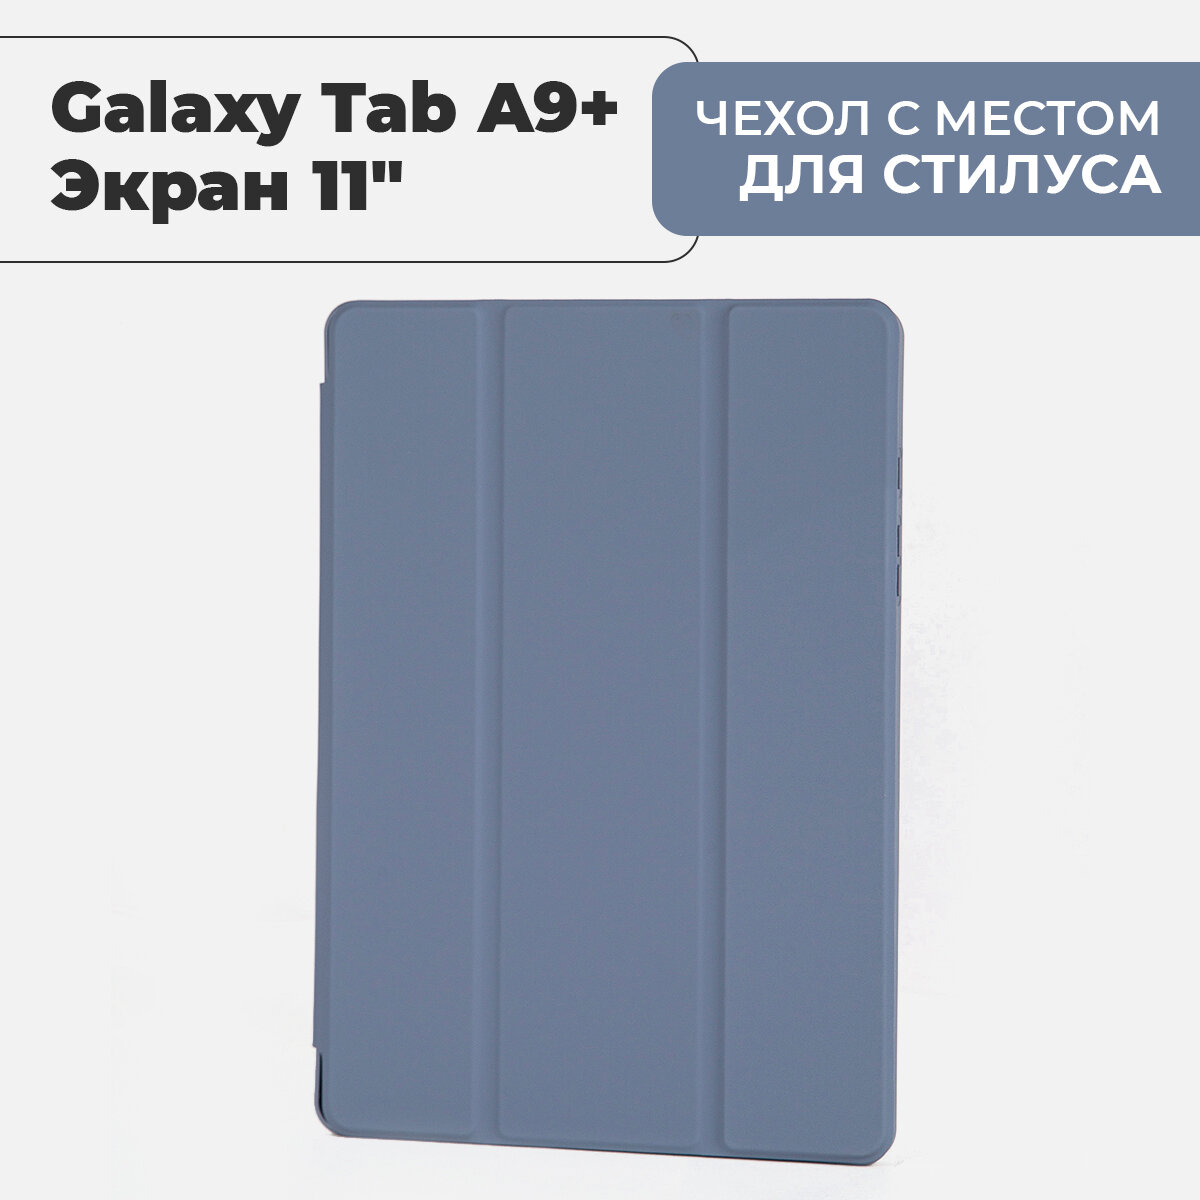 Чехол премиальный для планшета Samsung Galaxy Tab A9+ (экран 11") с местом для стилуса, лавандовый